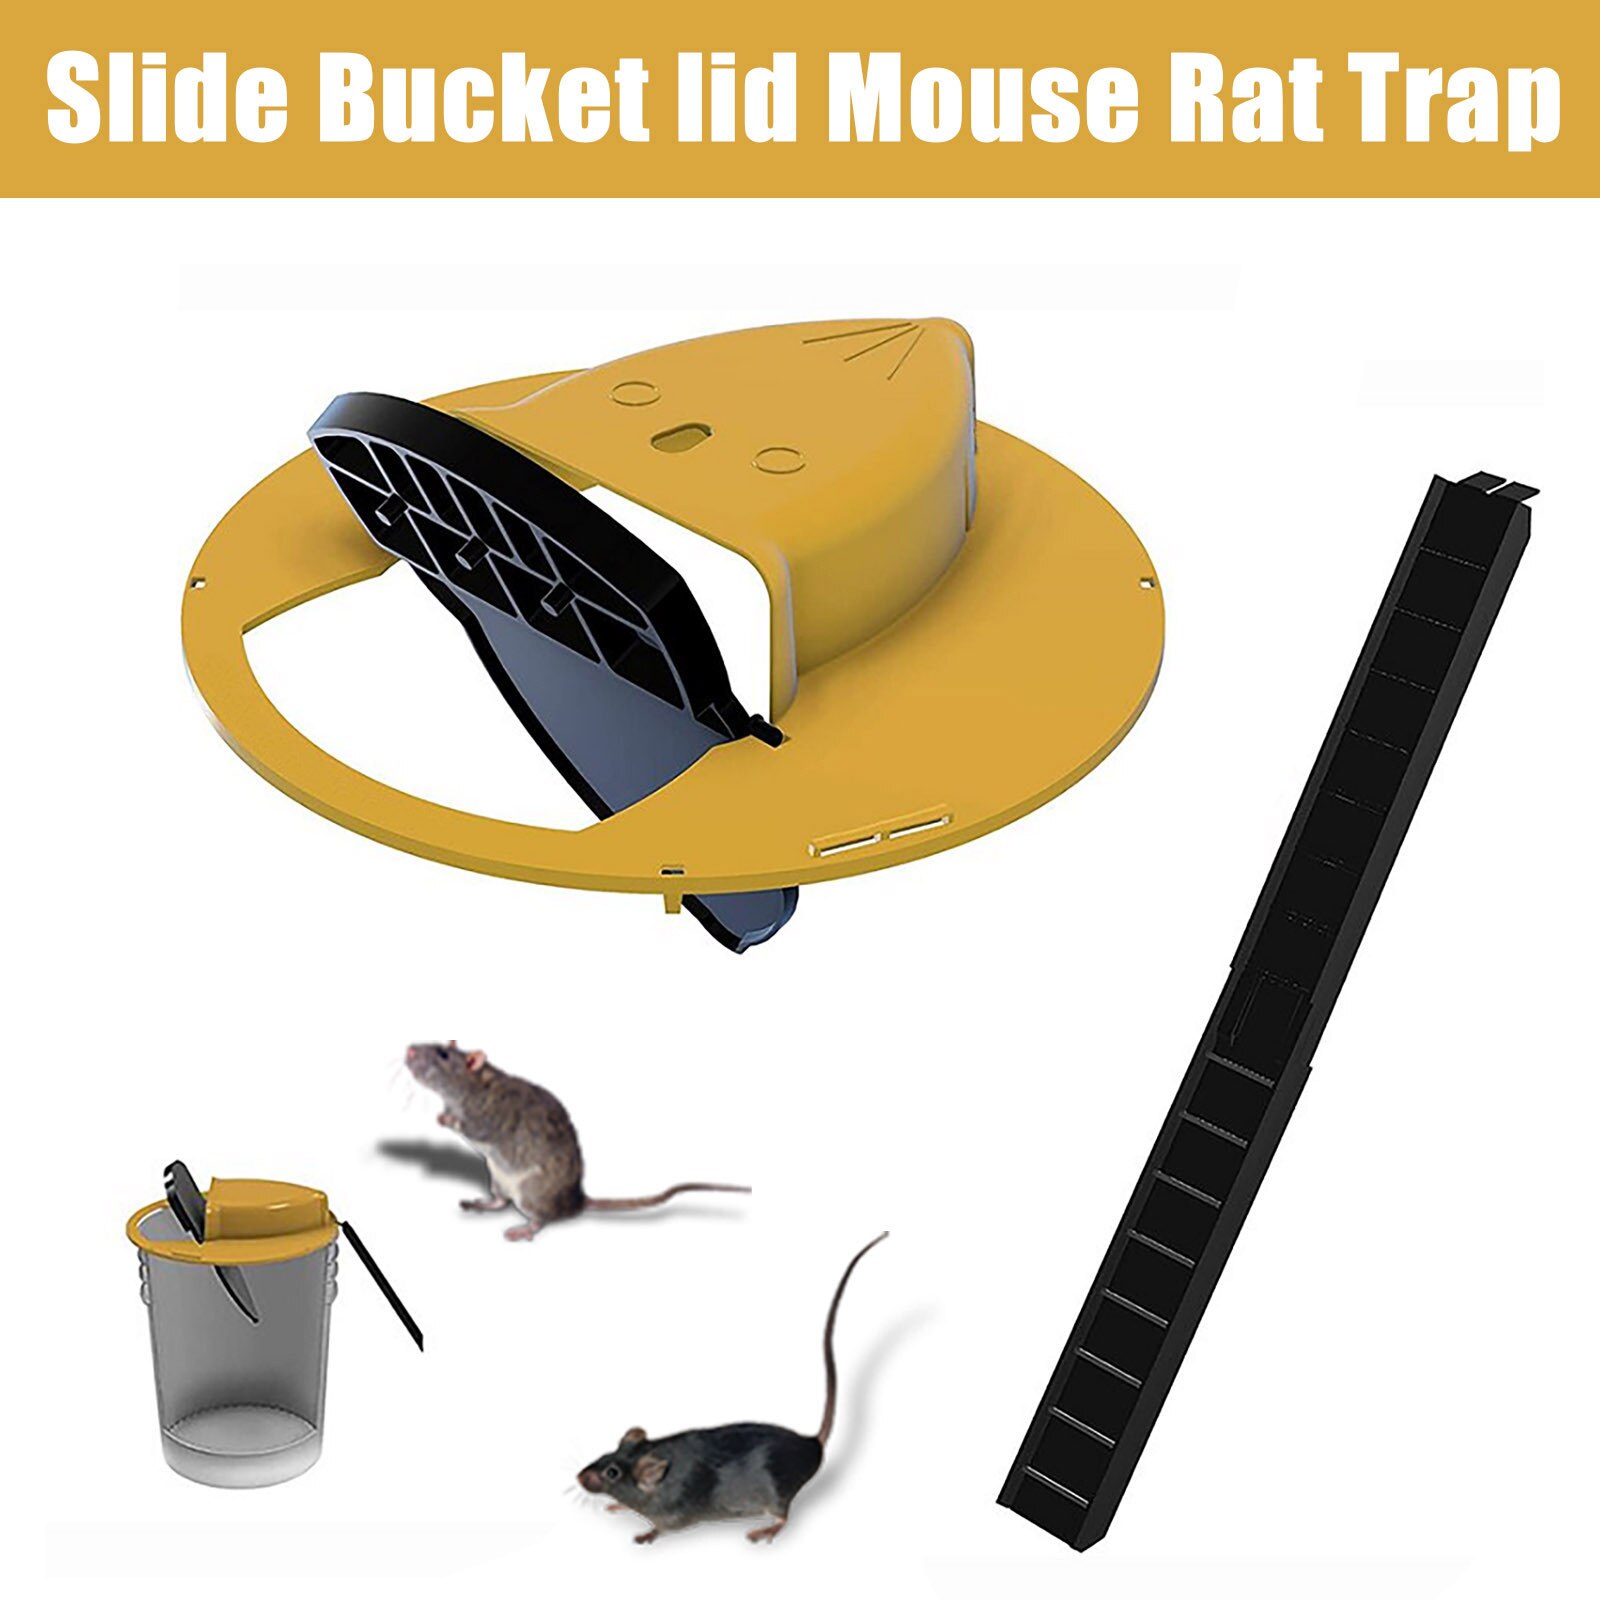 Reusable Plastic Smart Mouse Trap Flip N Slide Bucket Lid Mouse Rat